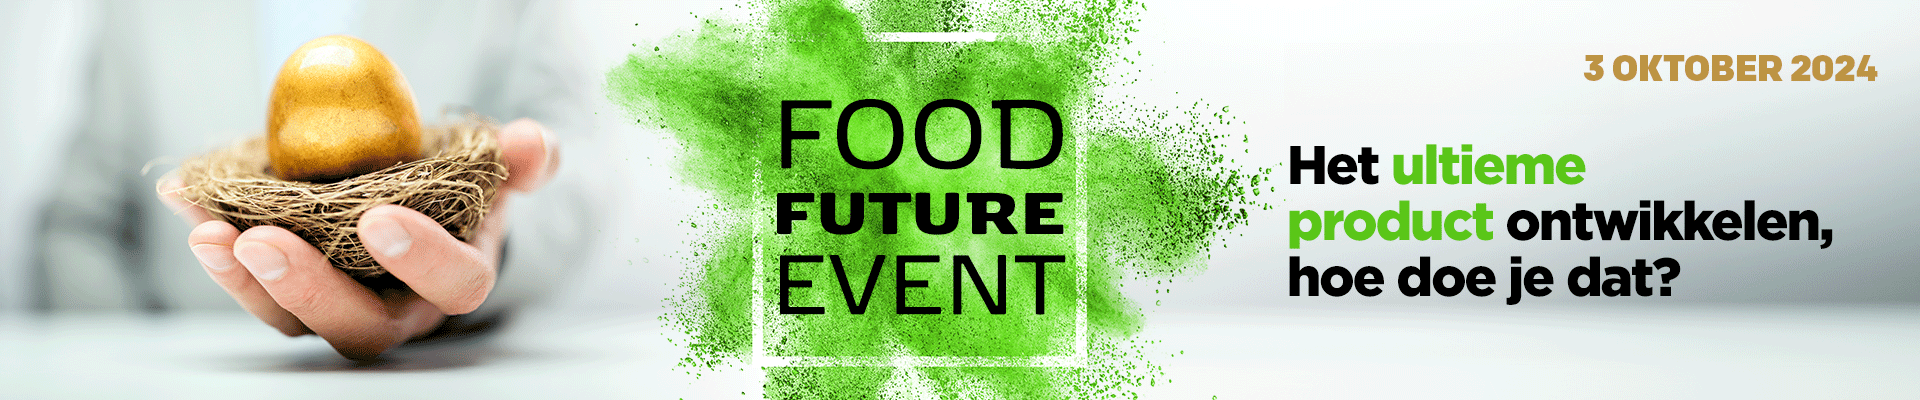 Food Future Event 2024